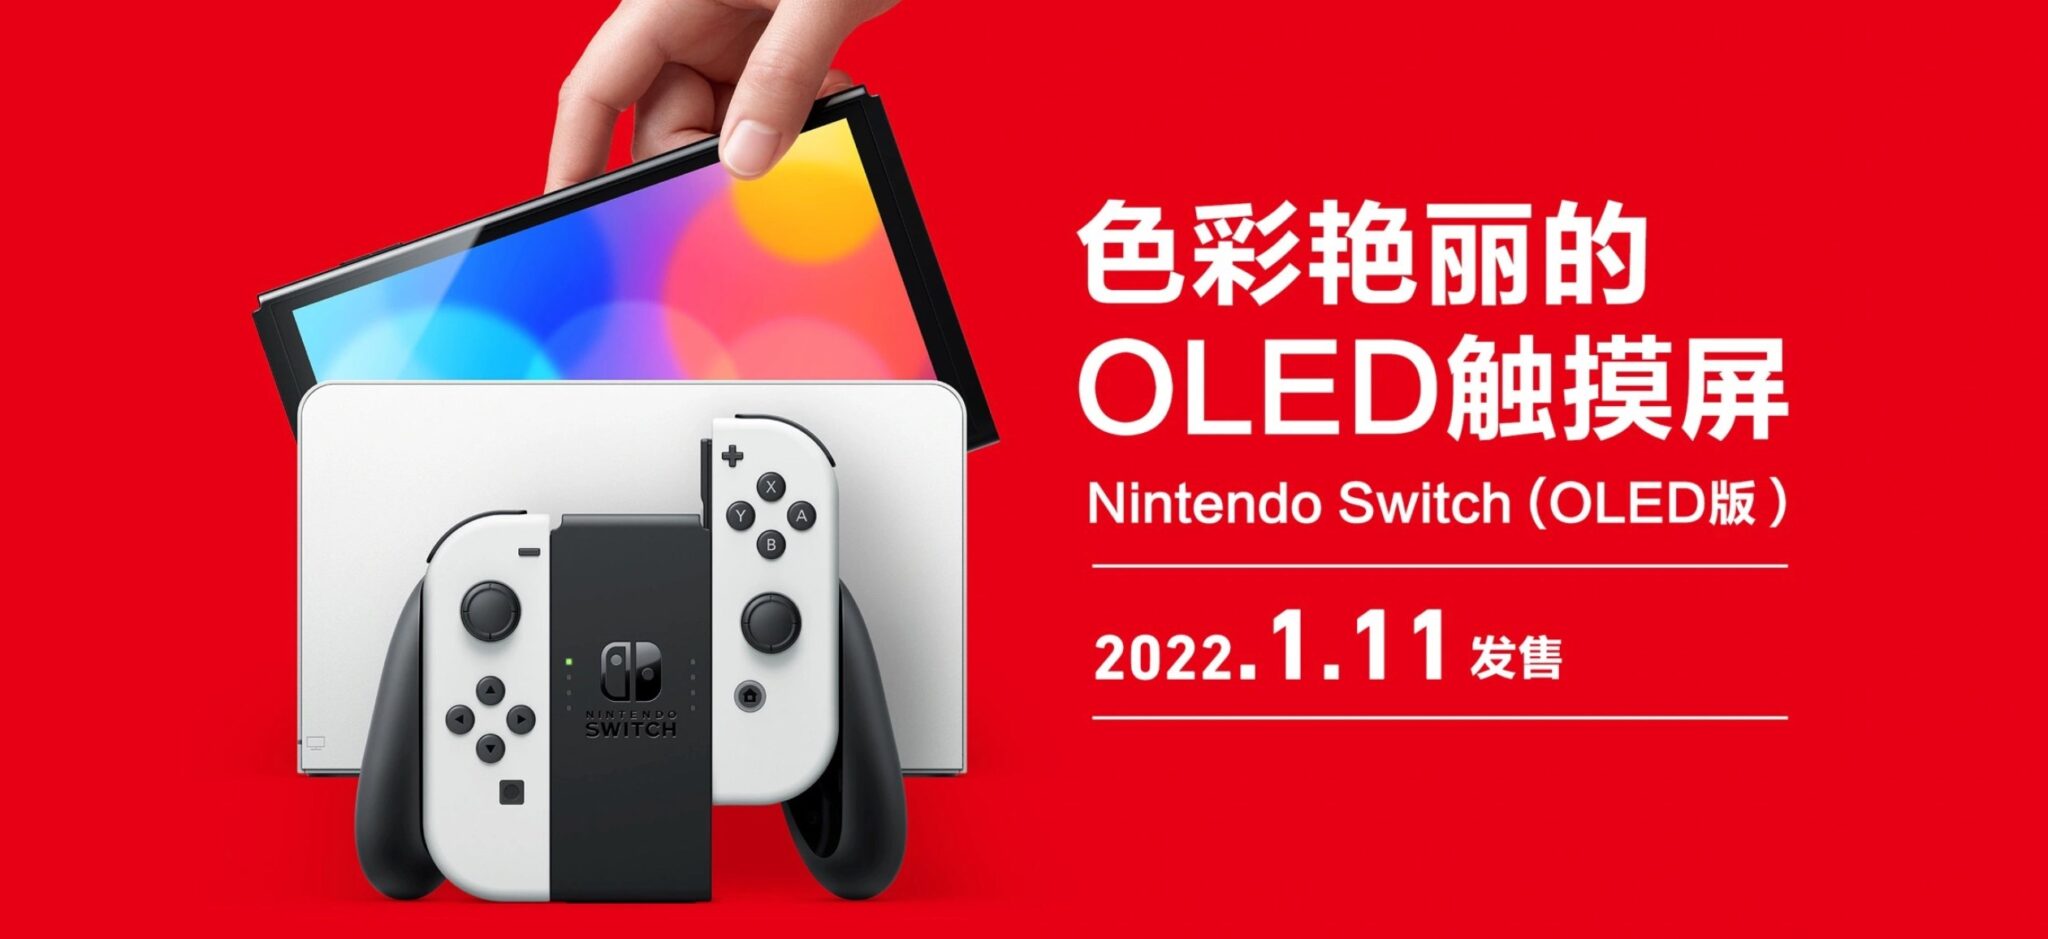 Nintendo Switch OLED Model wordt uitgebracht op 11 januari 2022 op het vasteland van China